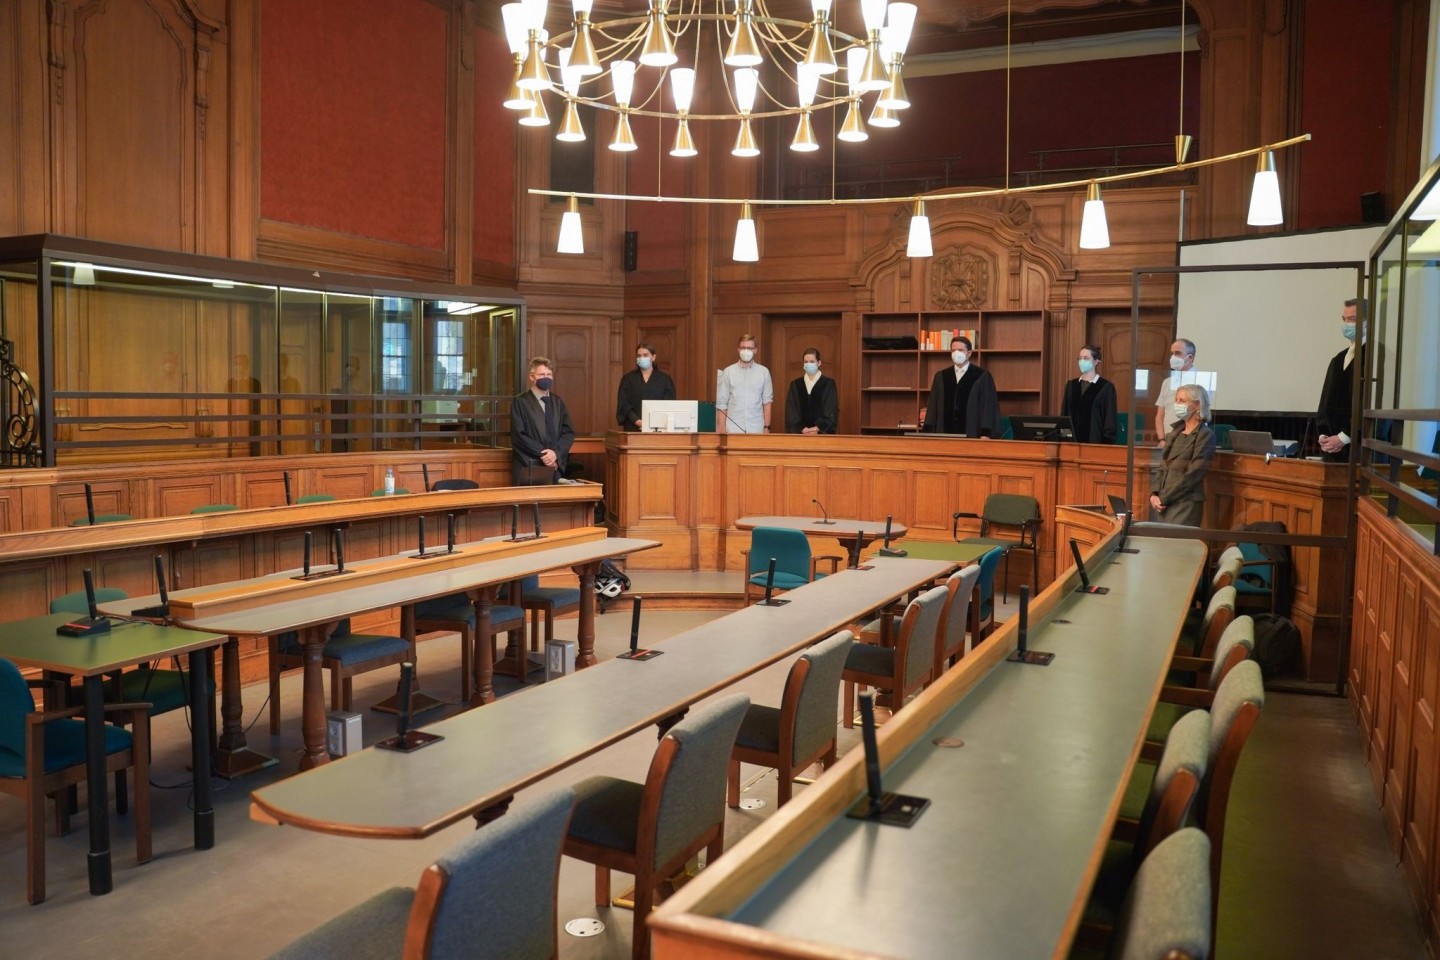 Blick in einen Saal des Kriminalgerichts Moabit kurz vor Beginn des Prozesses gegen den 30-jährigen, der die Rohrbomben gebaut und gezündet haben soll.